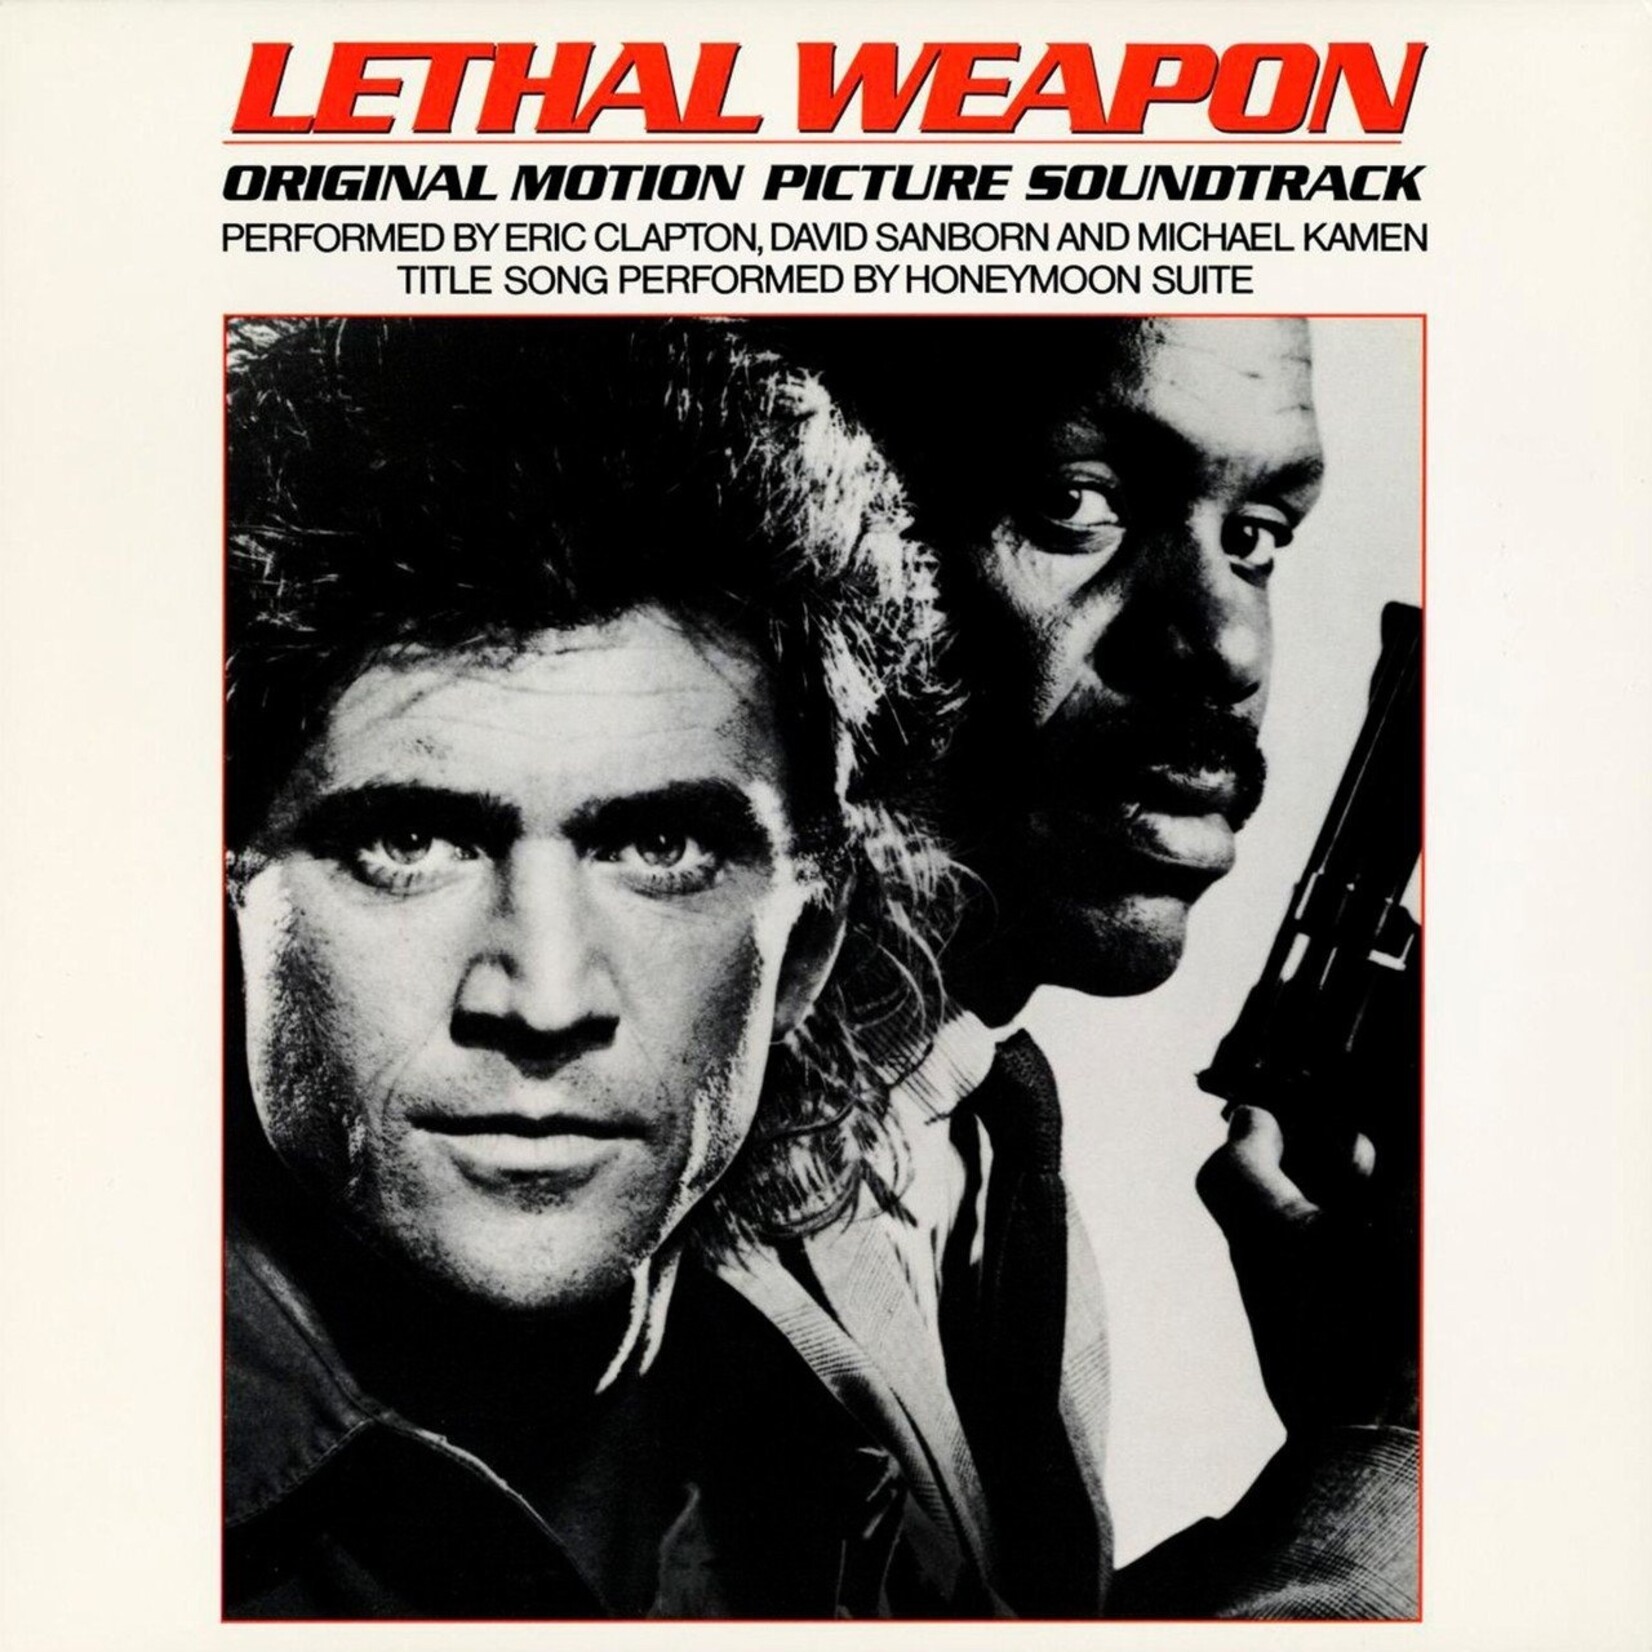 Eric Clapton, David Sanborn, Michael Kamen, Honeymoon Suite – Lethal Weapon (Original Motion Picture Soundtrack)